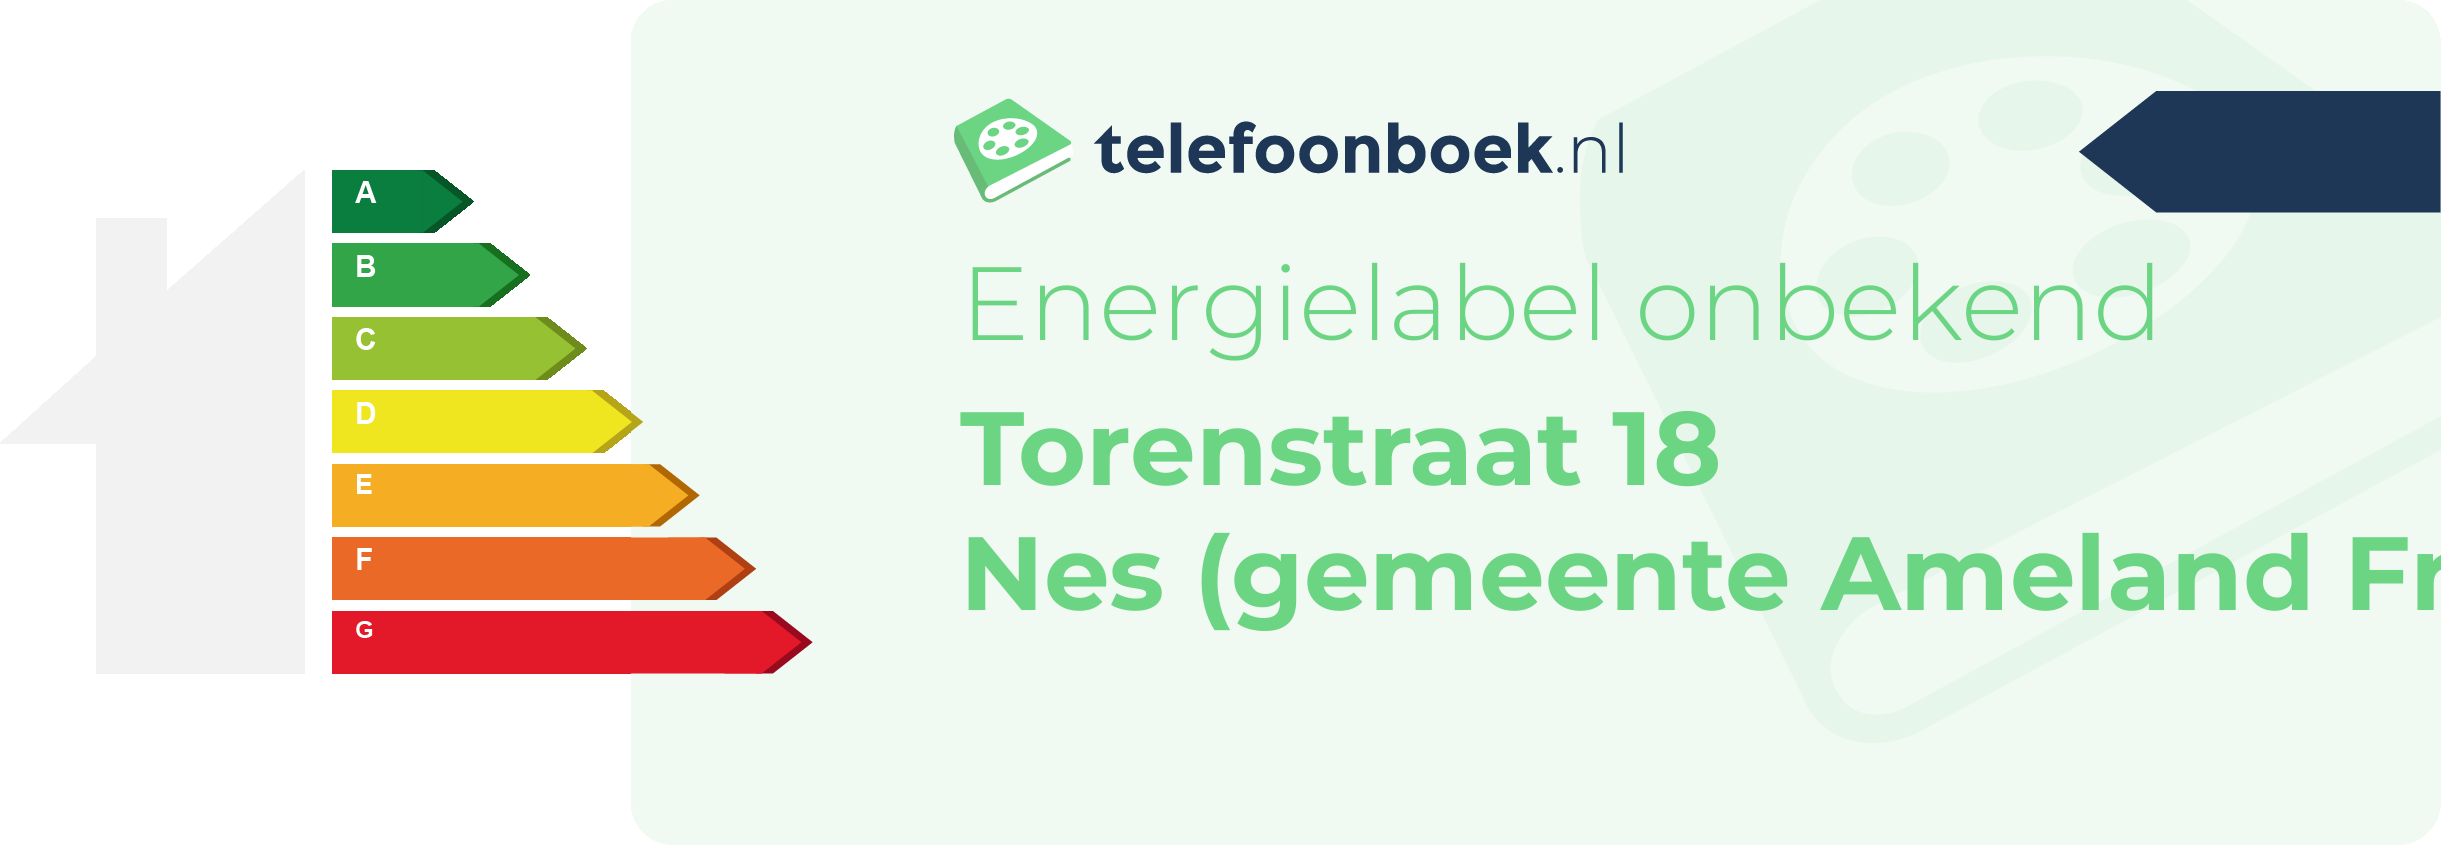 Energielabel Torenstraat 18 Nes (gemeente Ameland Friesland)